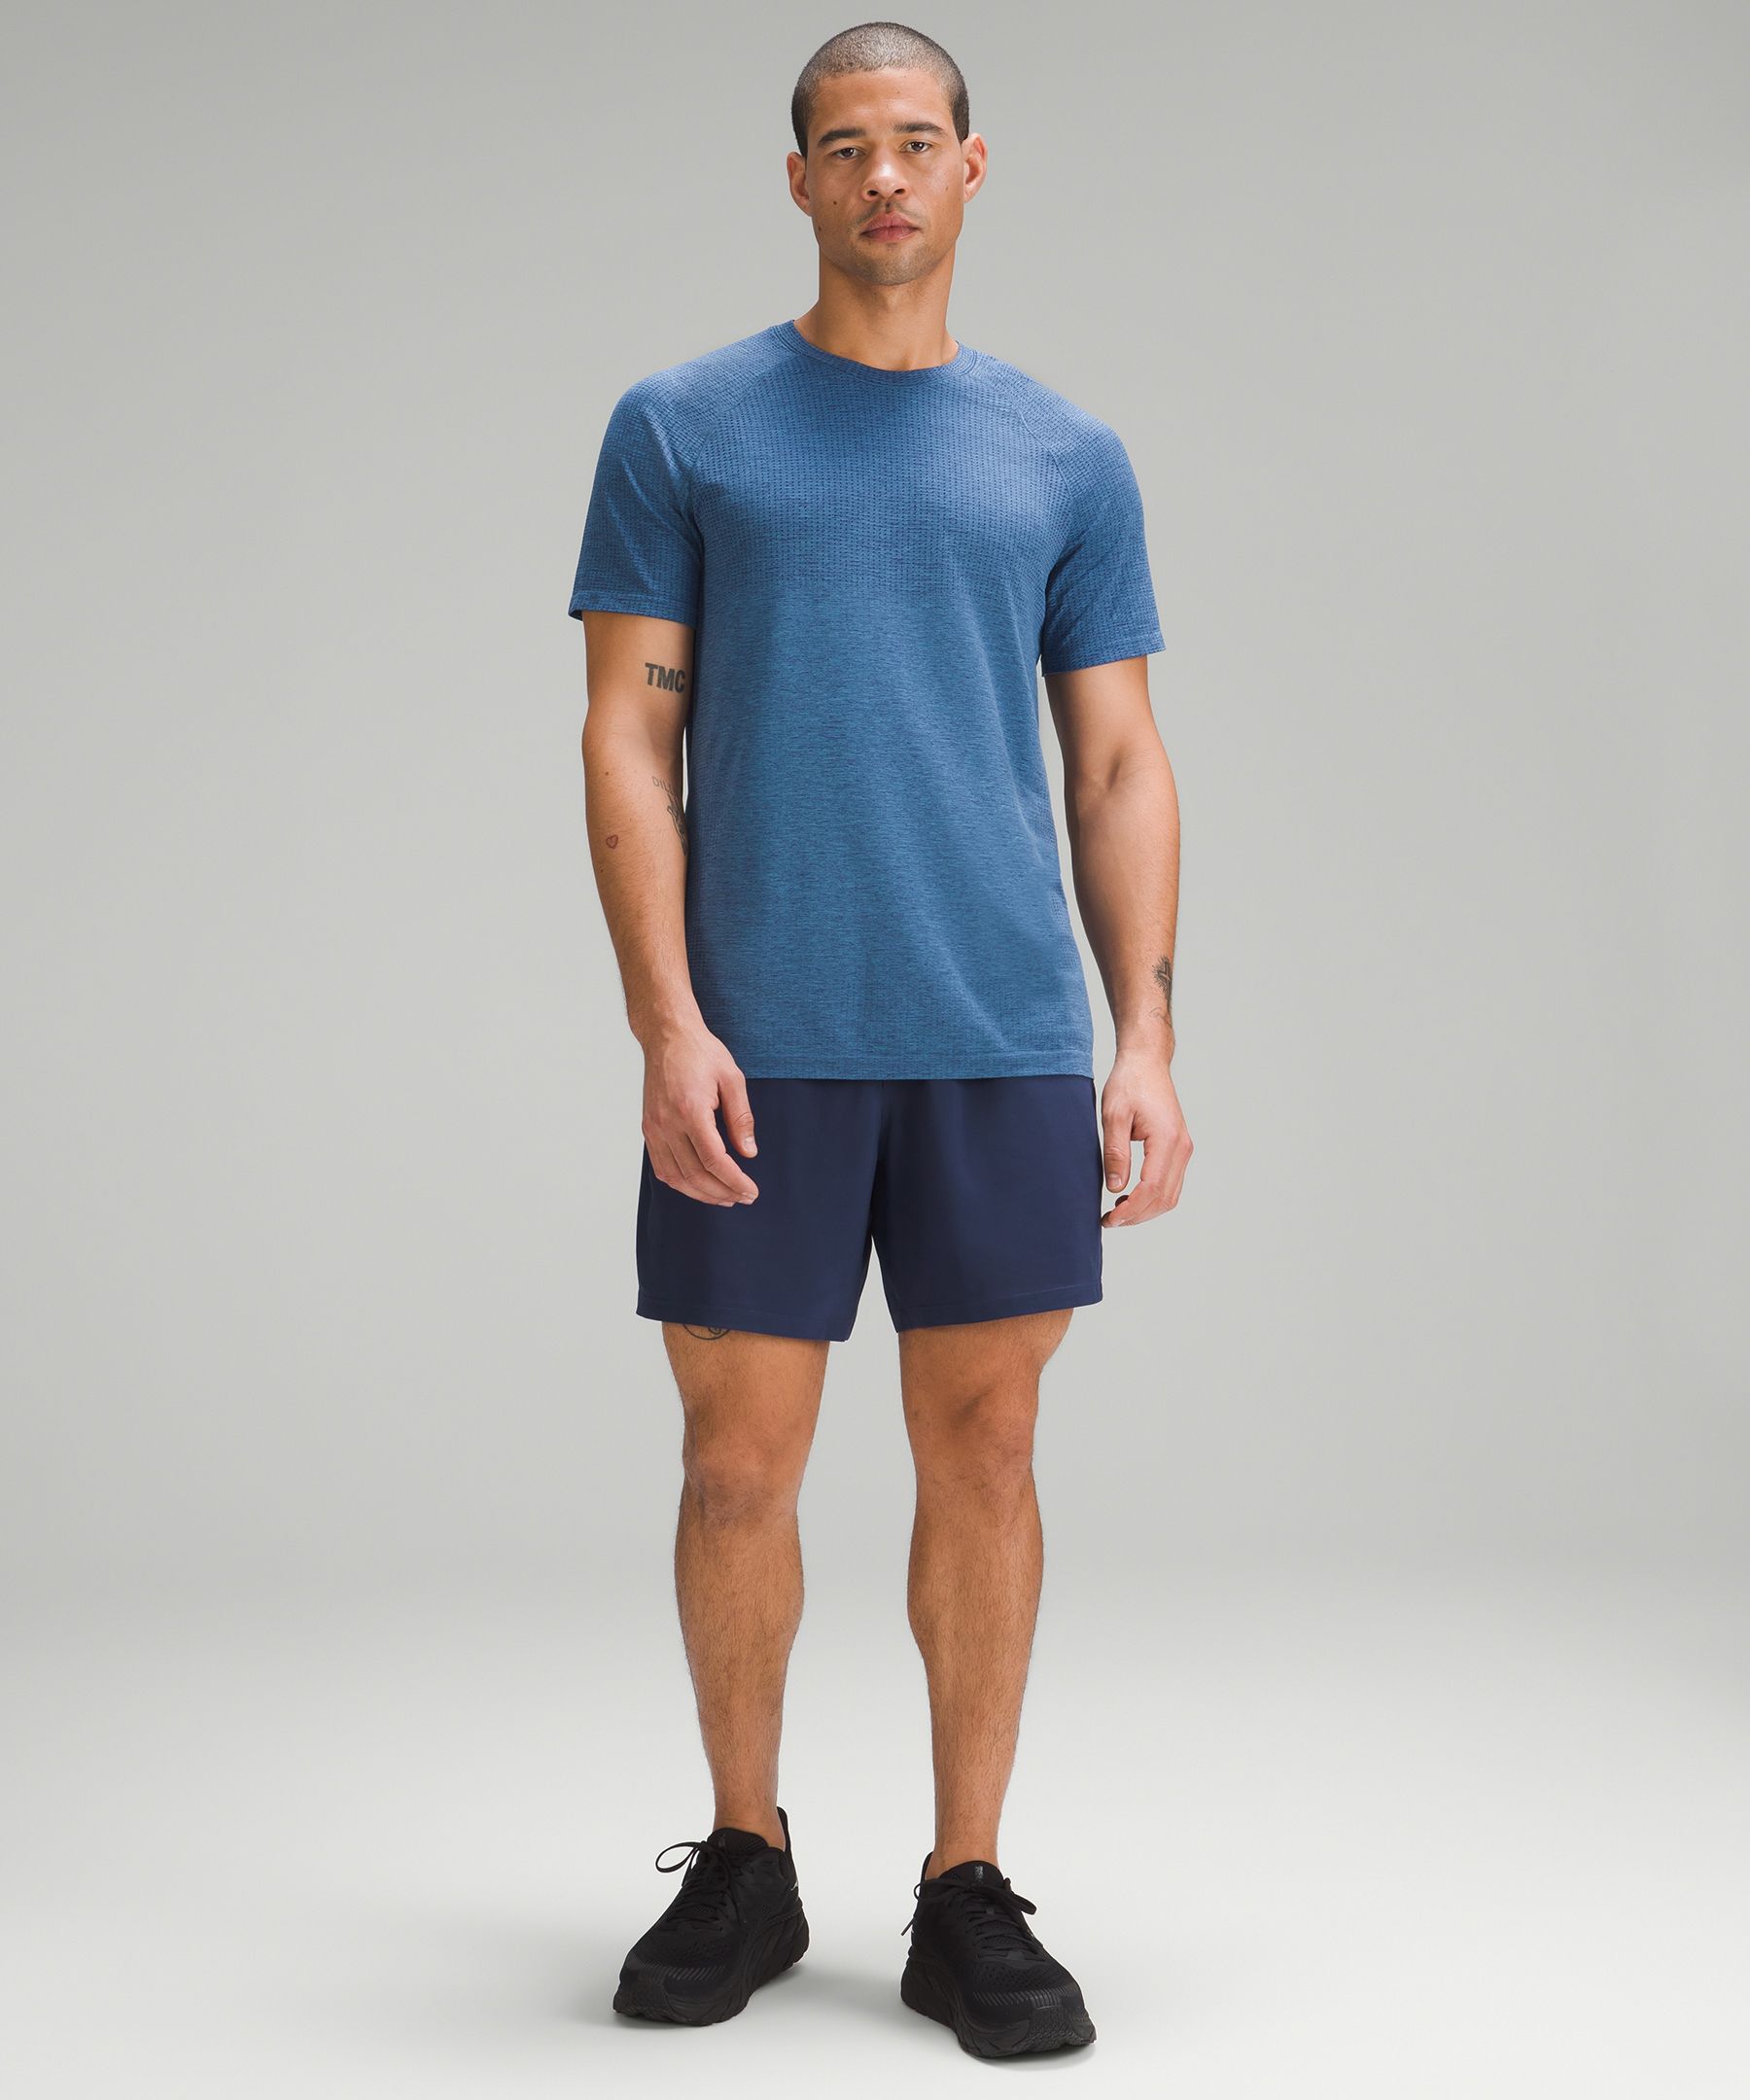 Navy Running/Training Shorts - Men's Pace Breaker Linerless Short 7 - Size M | Lululemon